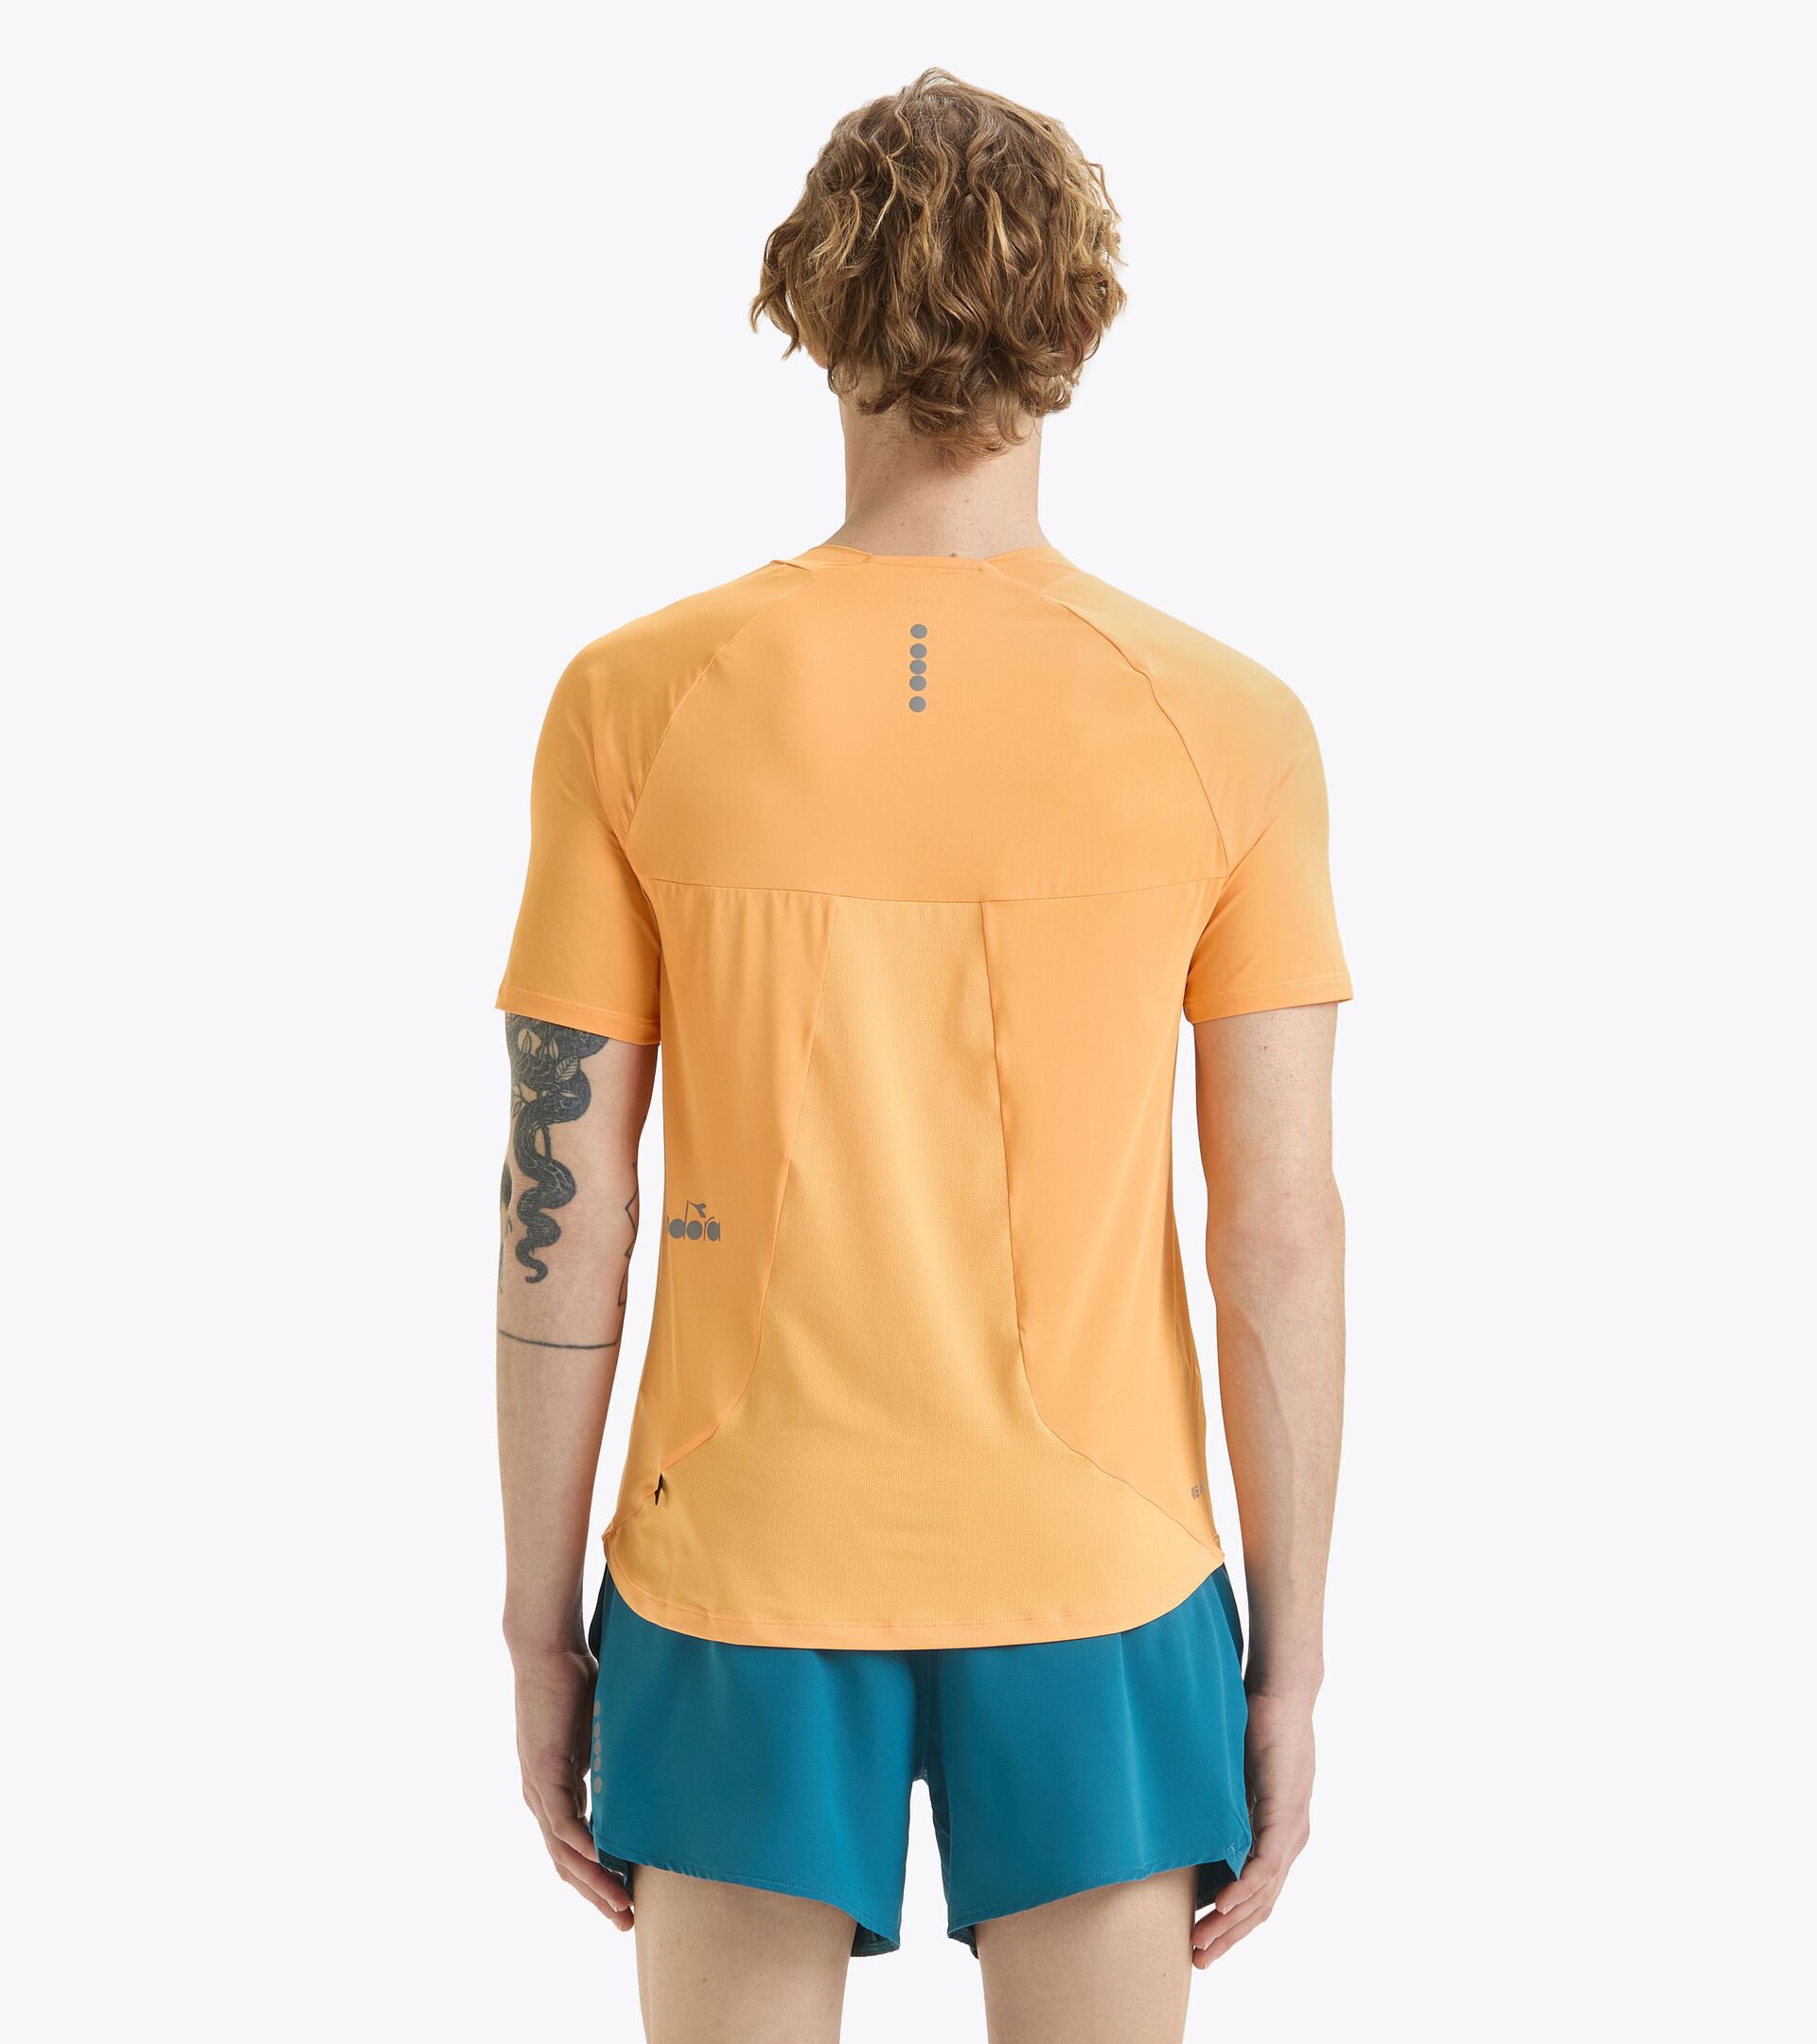 Running t-shirt - Light fabric - Men’s
 SUPER LIGHT SS T-SHIRT KUMQUAT - Diadora